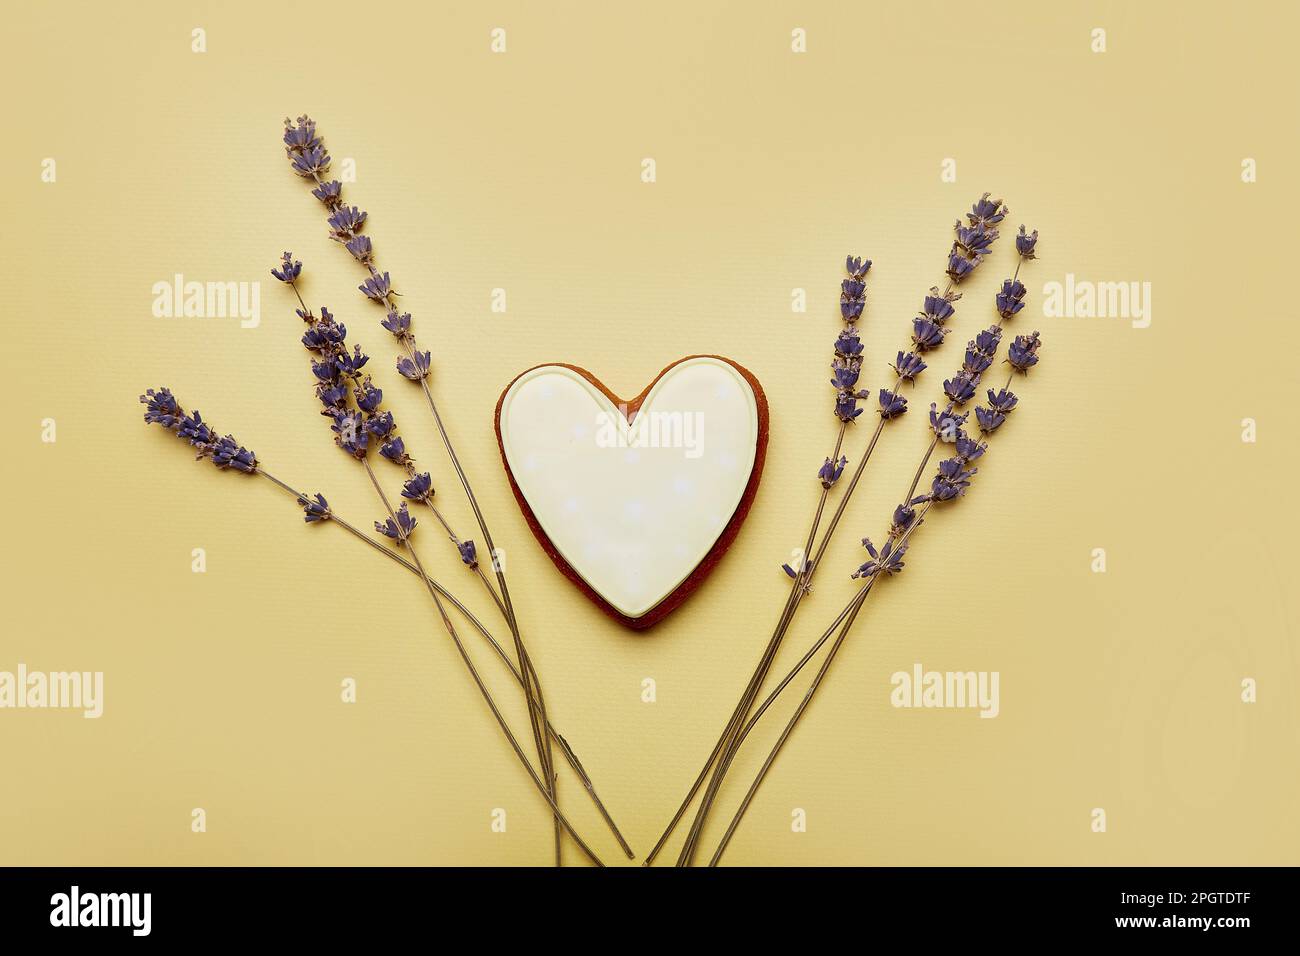 Ästhetischer Keks in Herzform mit Lavendel. Frauentag, Muttertag. Frühlingskarte mit gebackenen, glasierten Keksen auf gelbem Hintergrund. Weiblicher Backg Stockfoto